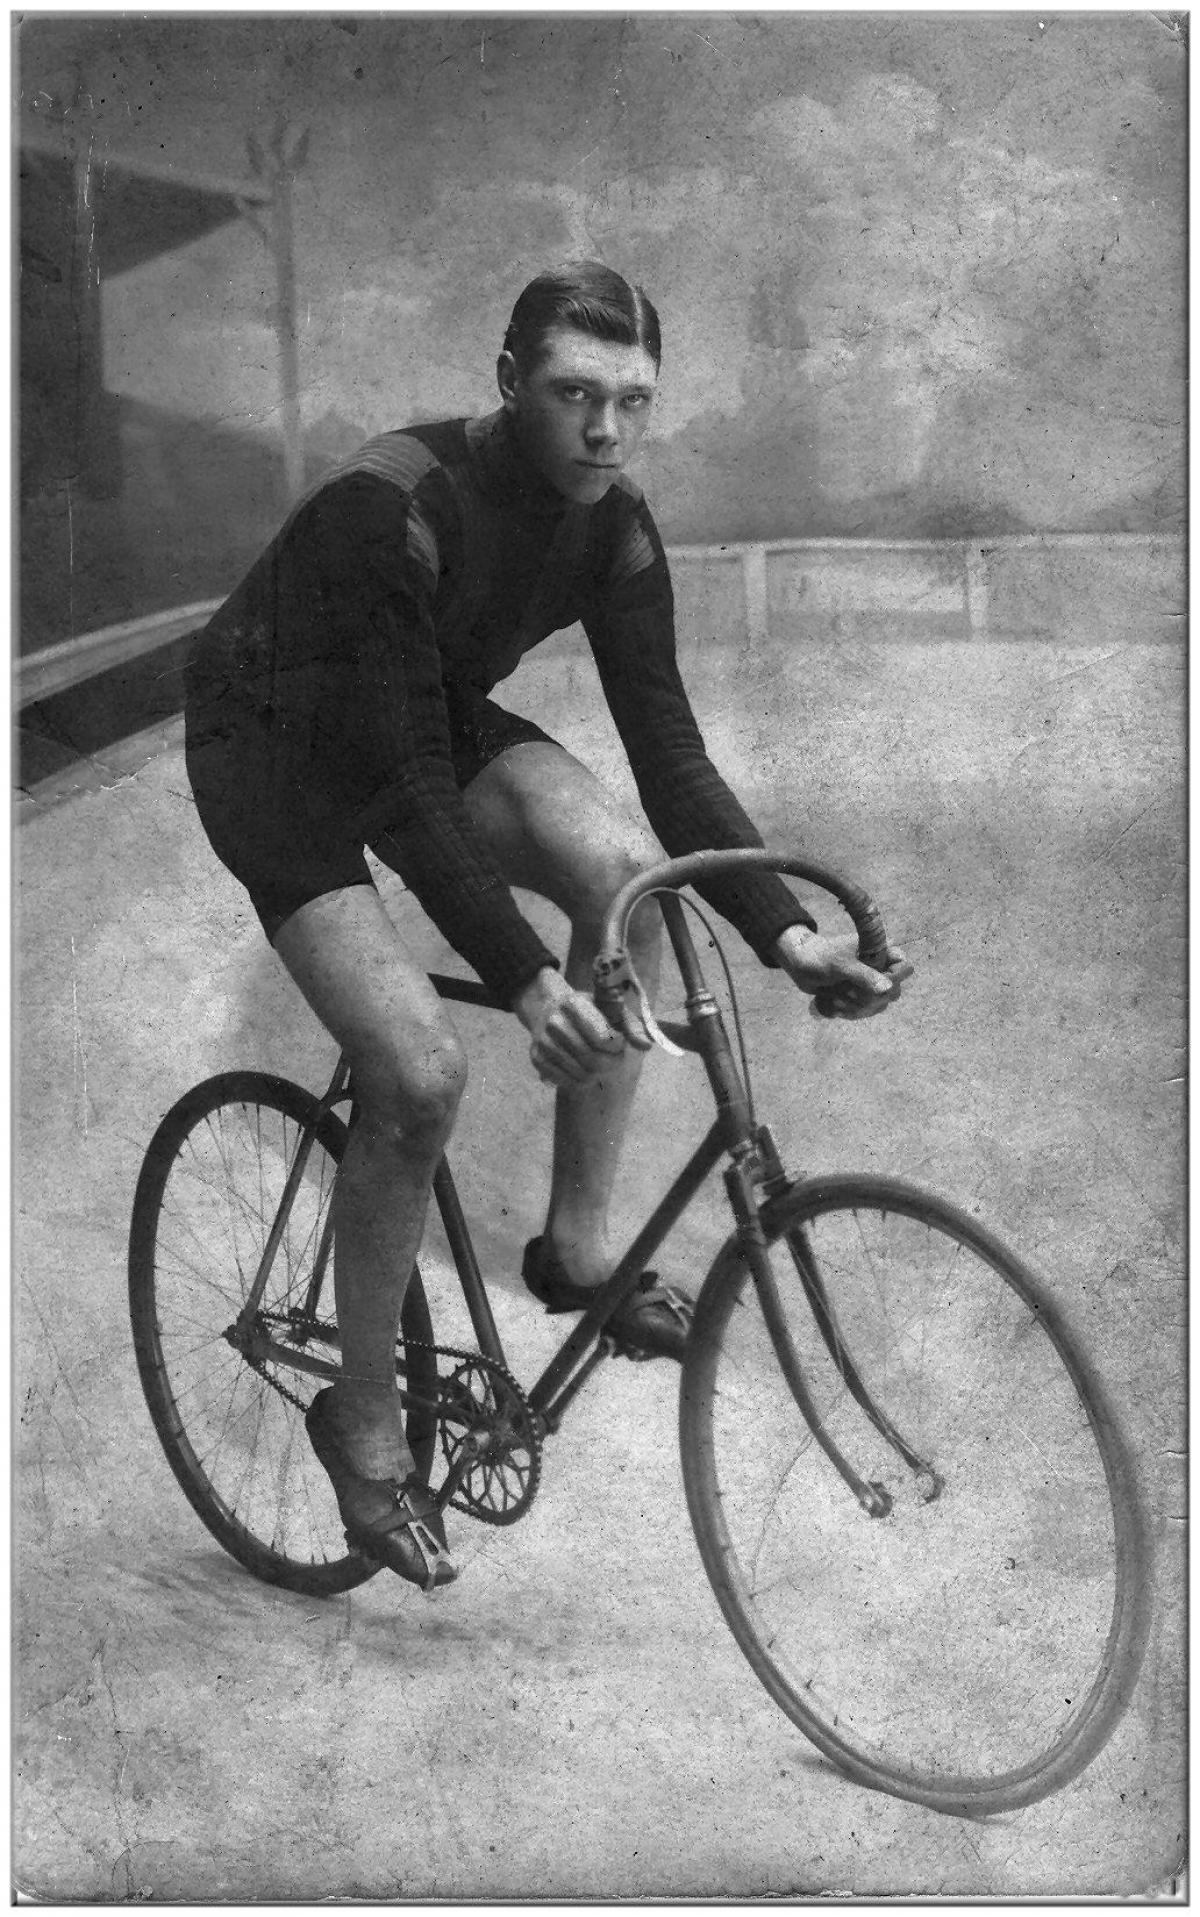 Veloschoenmaker Camiel Thomas op zijn fiets in 1905. (gf)